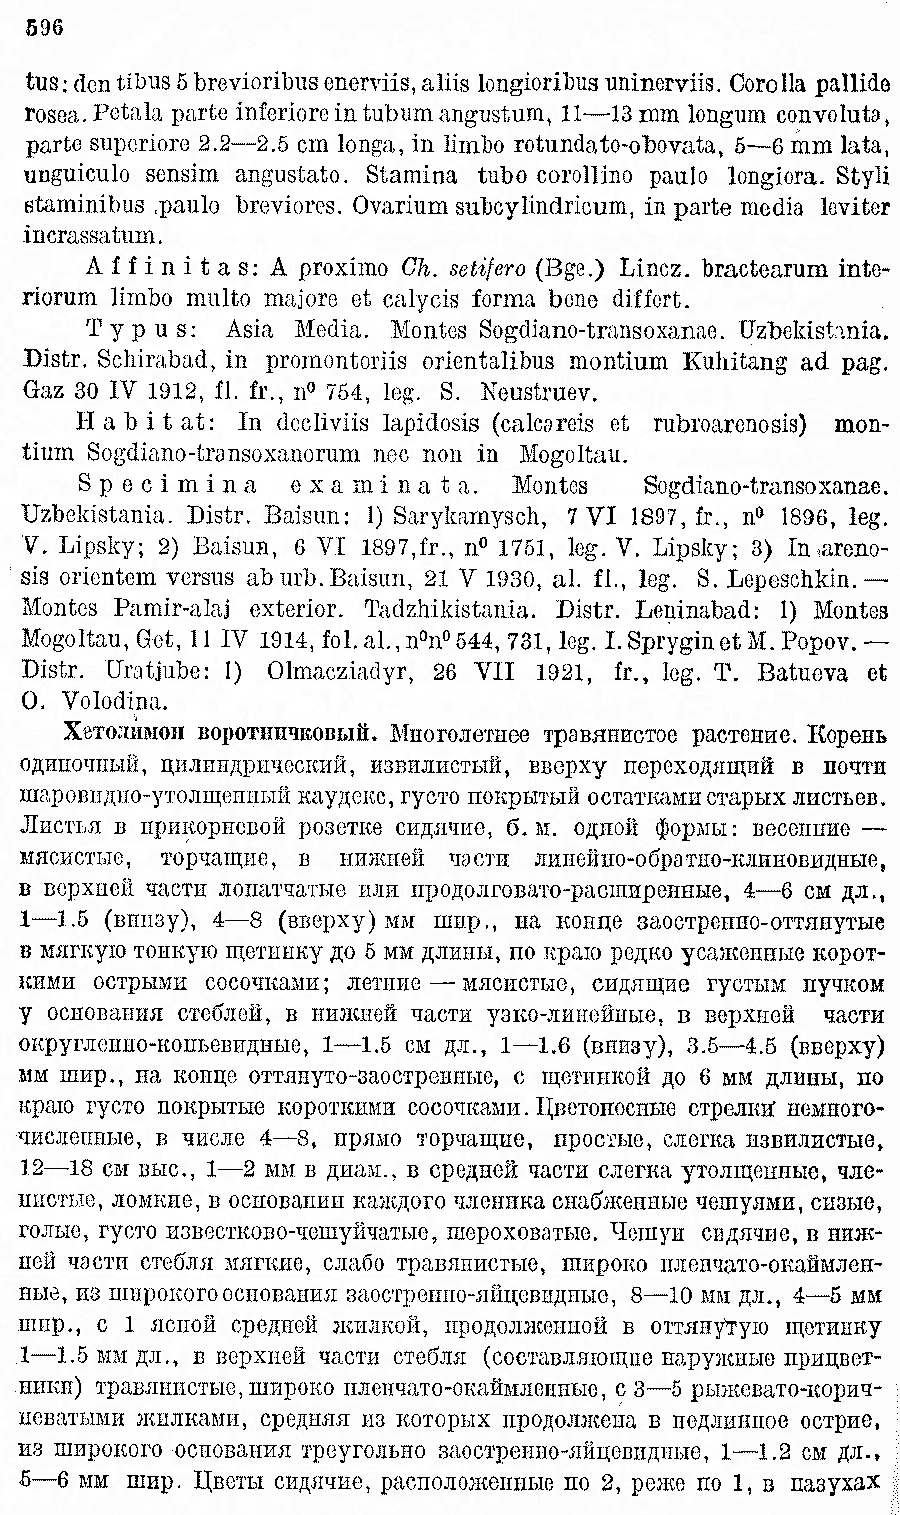 https://forum.plantarium.ru/misc.php?action=pun_attachment&amp;item=28437